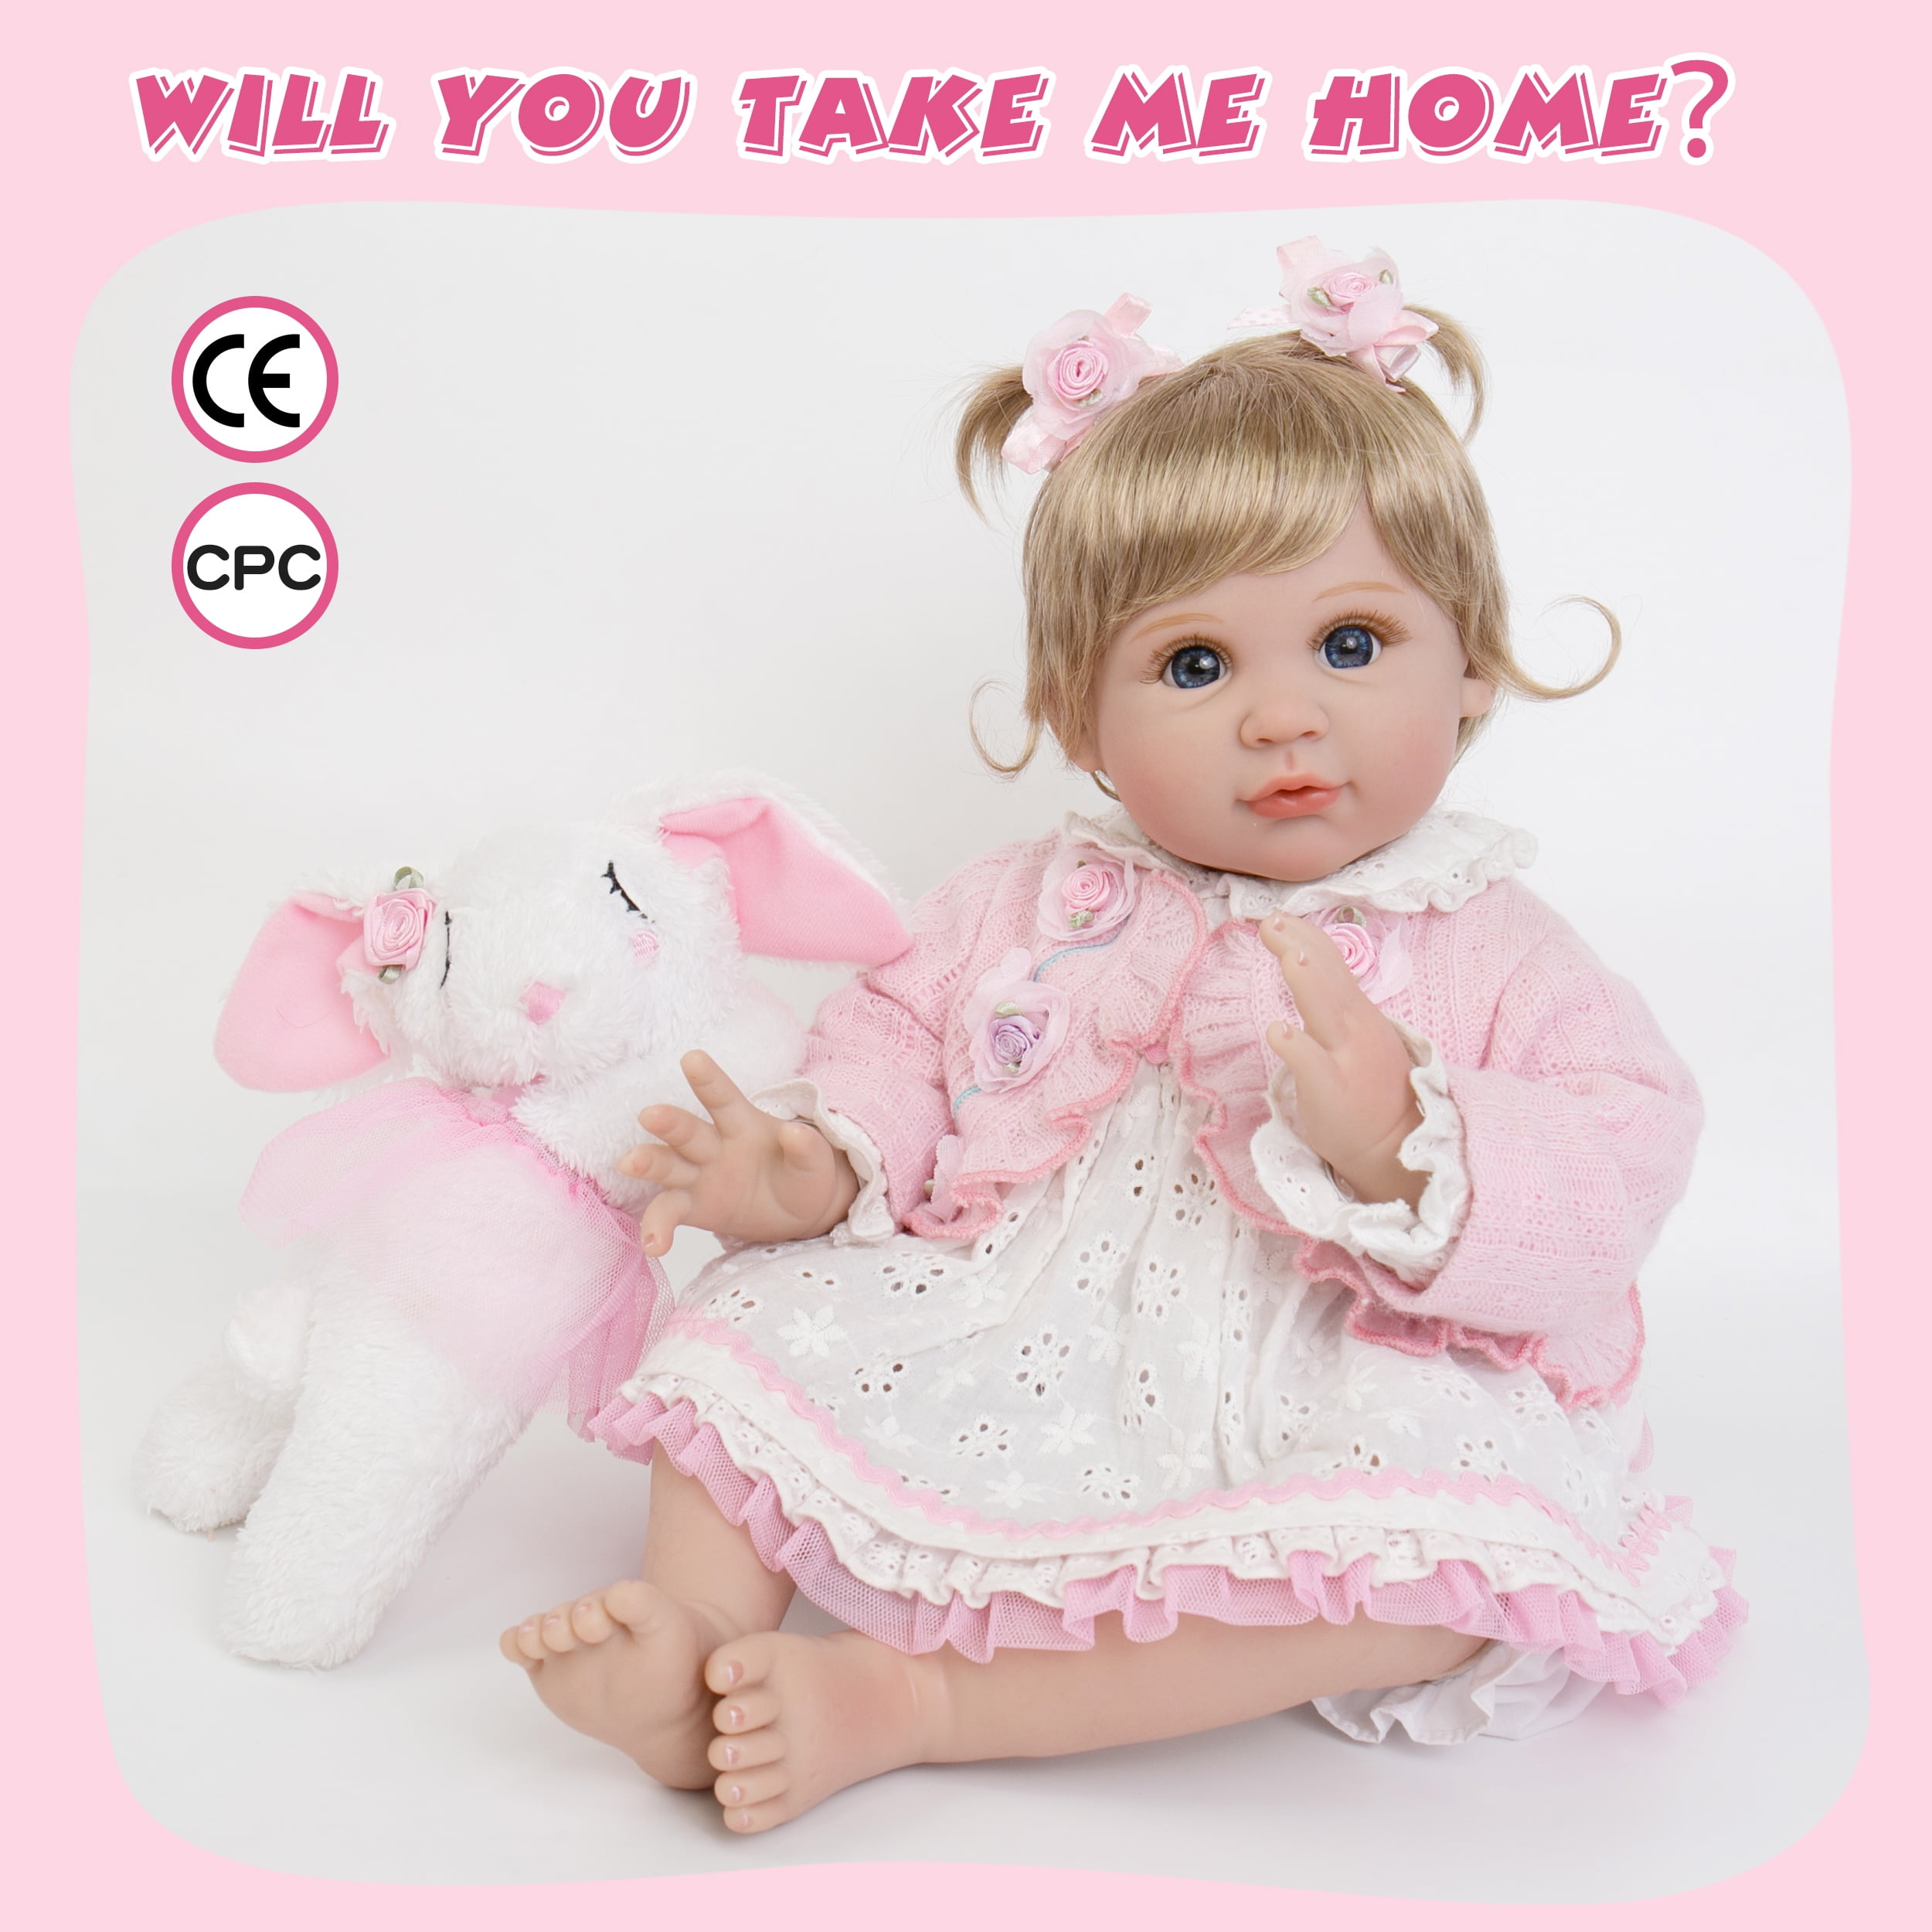 Milidool Muñecas Reborn Baby Girl, muñecas realistas de 22 pulgadas que se  ven reales, muñeca de bebé real de silicona, muñeca de bebé recién nacida